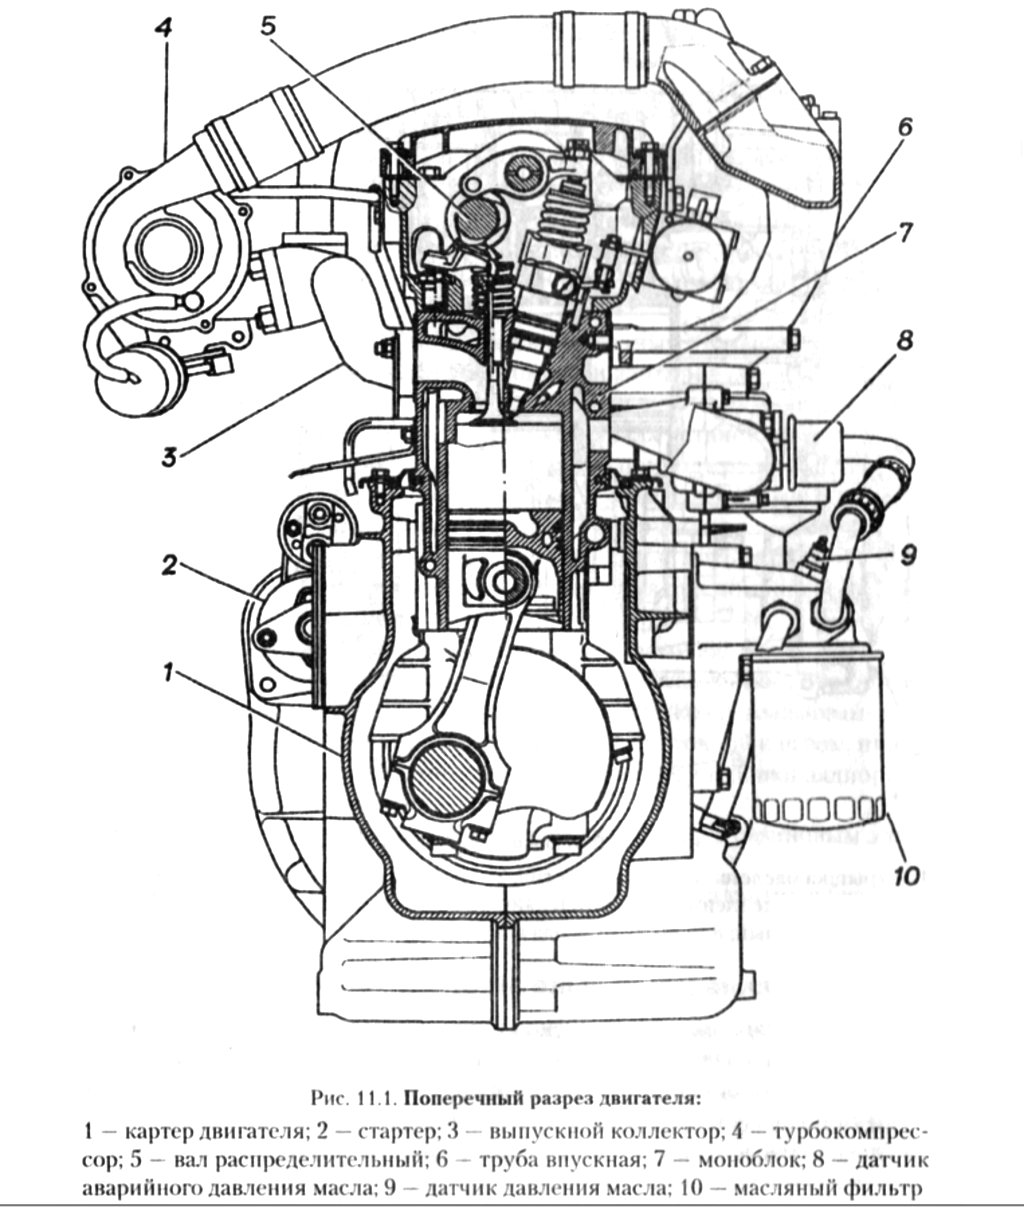 Нижнеклапанный двигатель схема